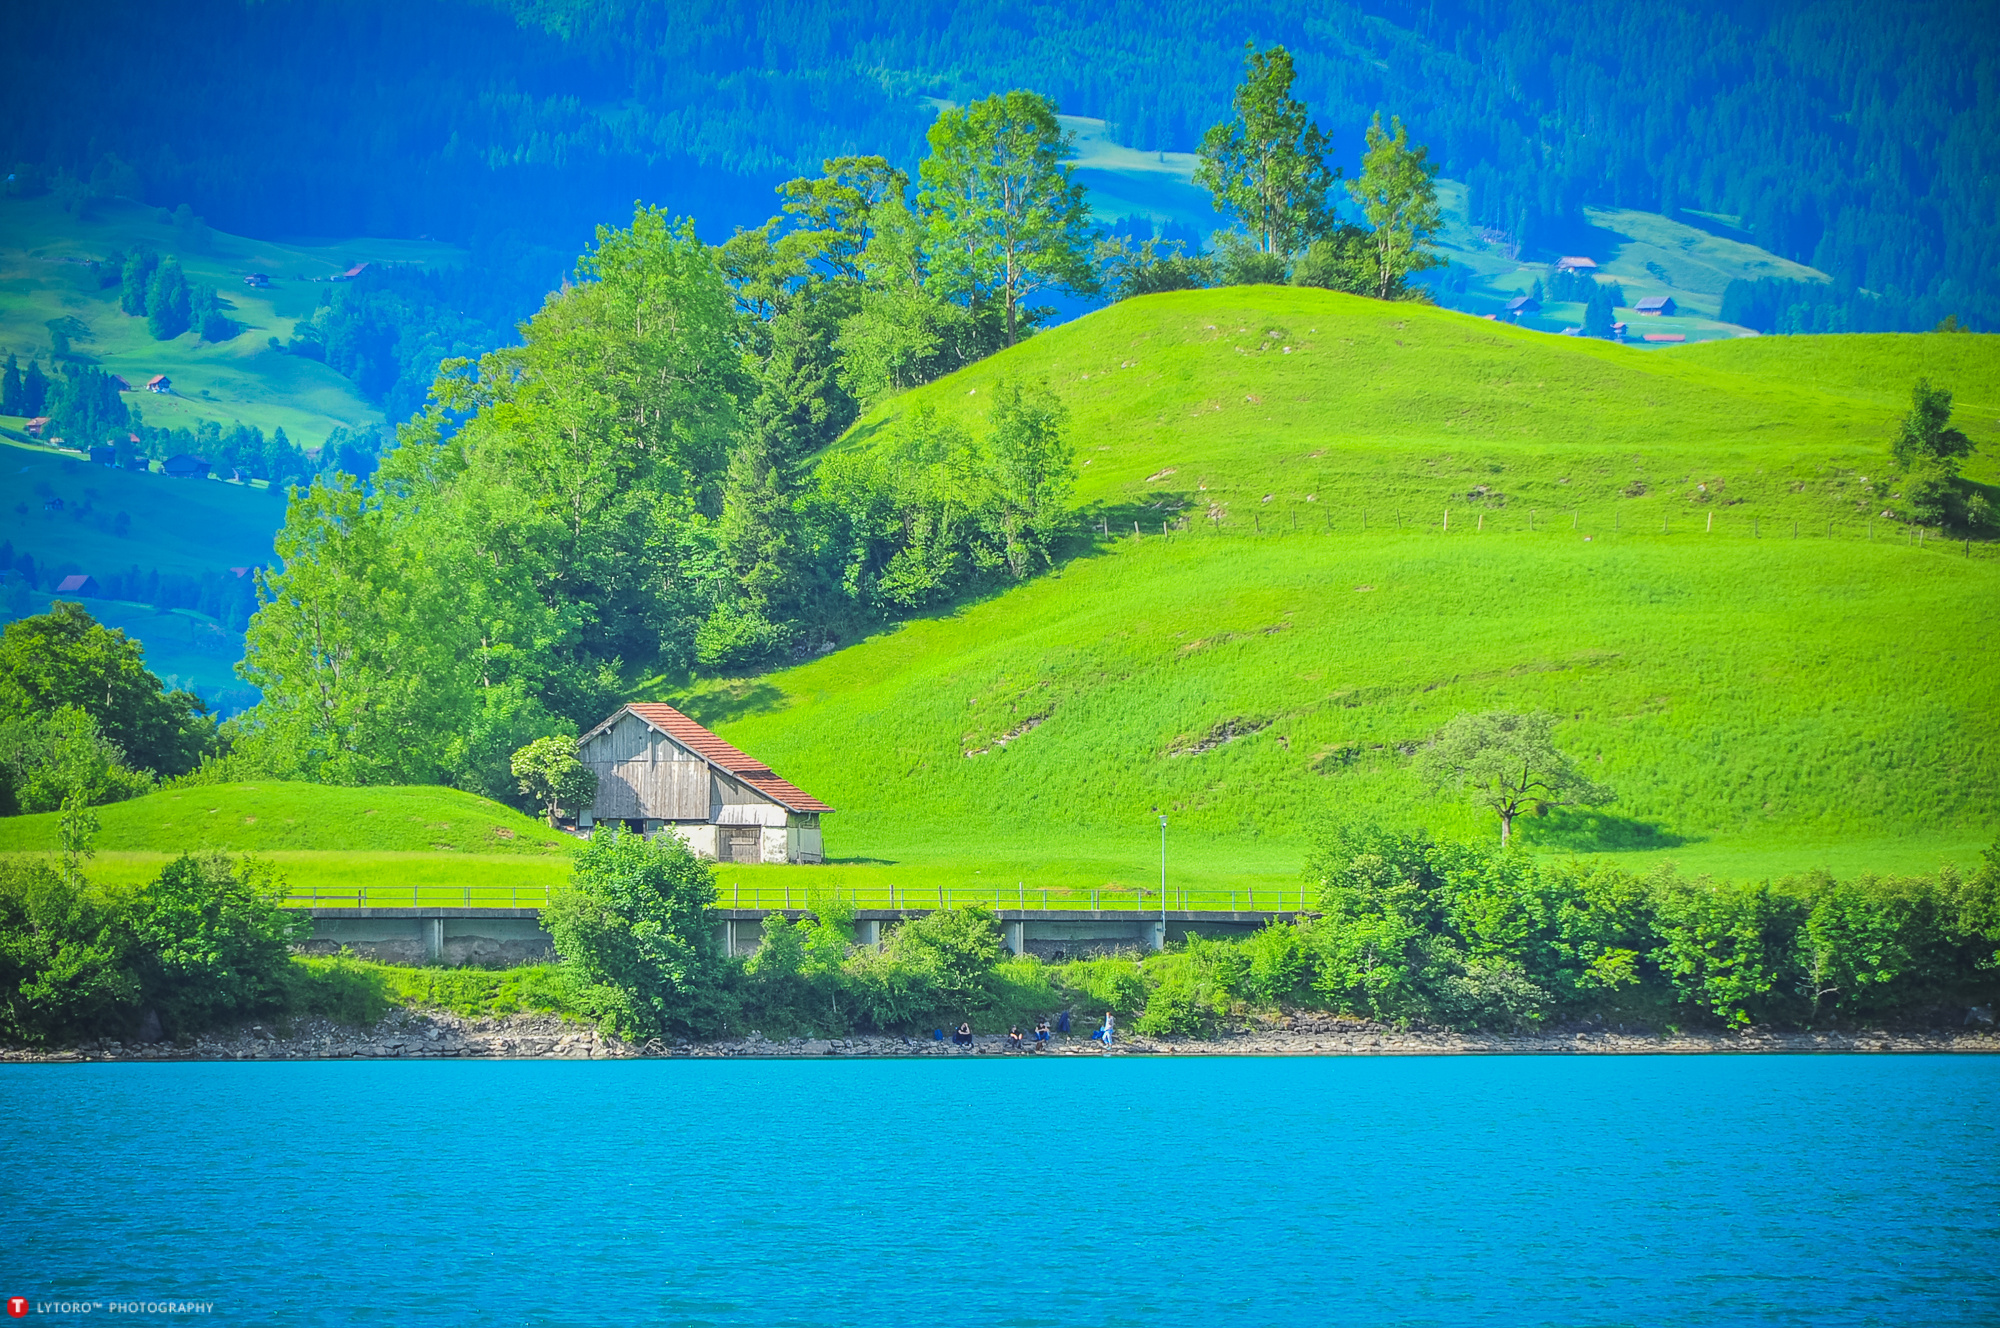 瑞士小镇 美景风景 湖边山水老房子|ZZXXO